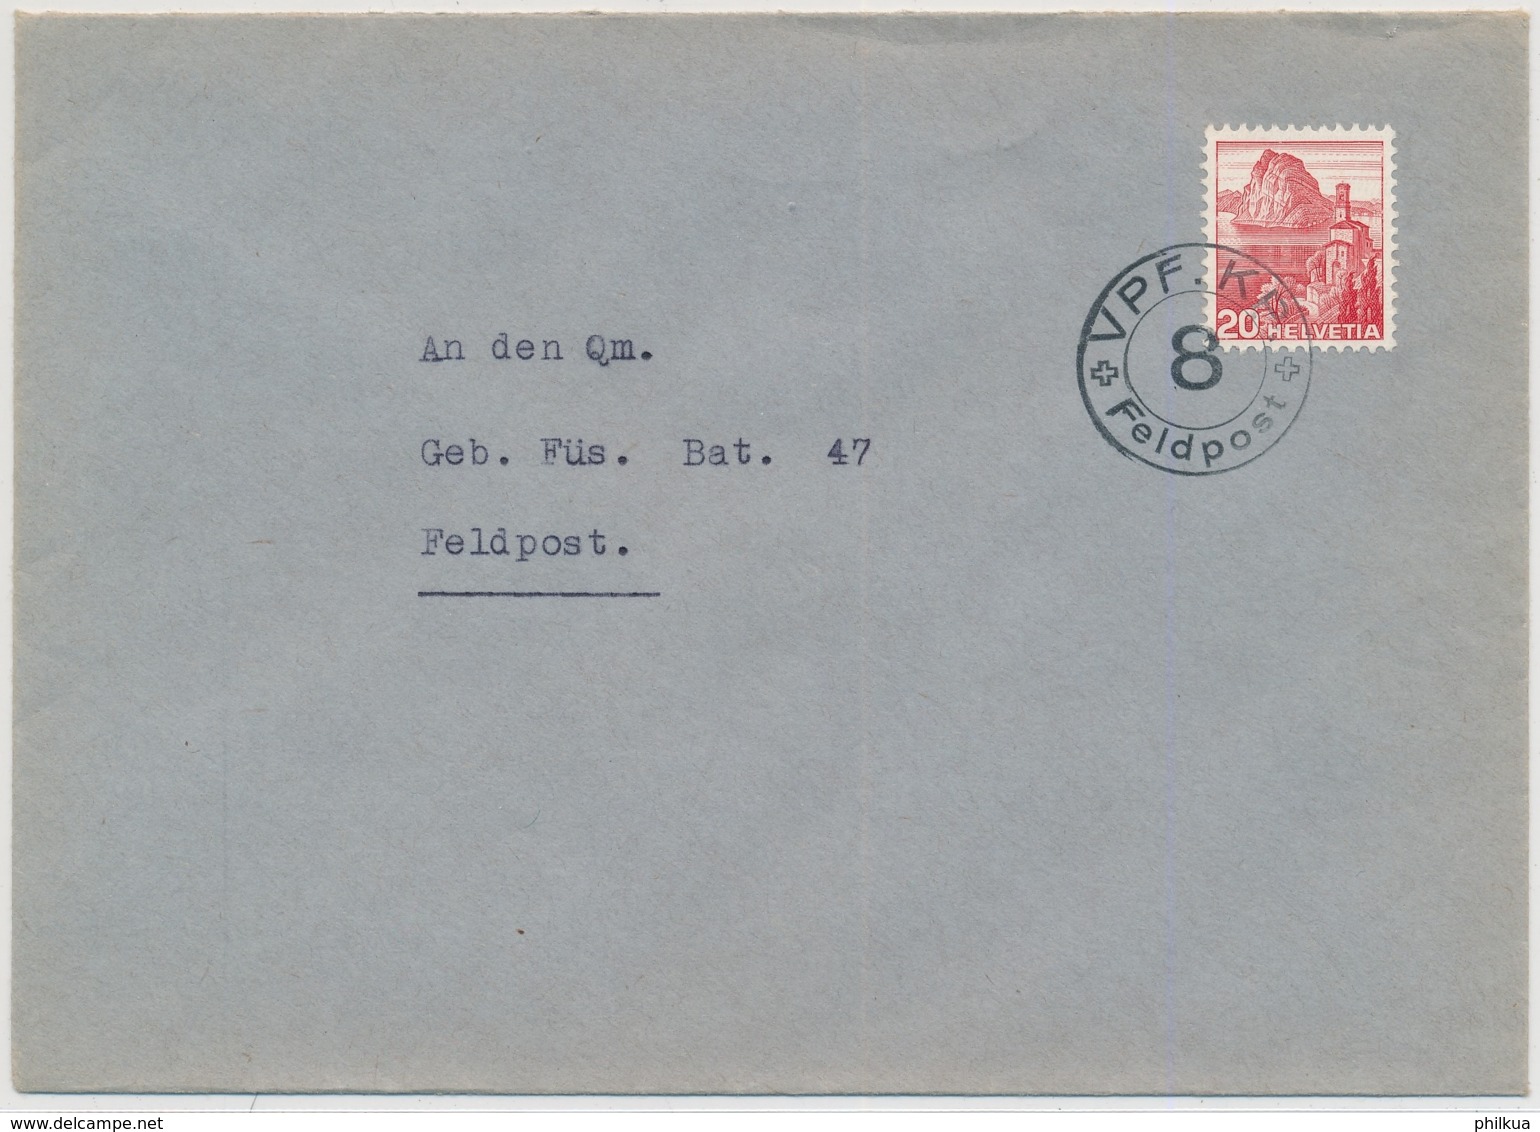 CH 215 Auf Brief Mit Truppenstempel - 8 - VPF. KP. - FELDPOST - Postmarks